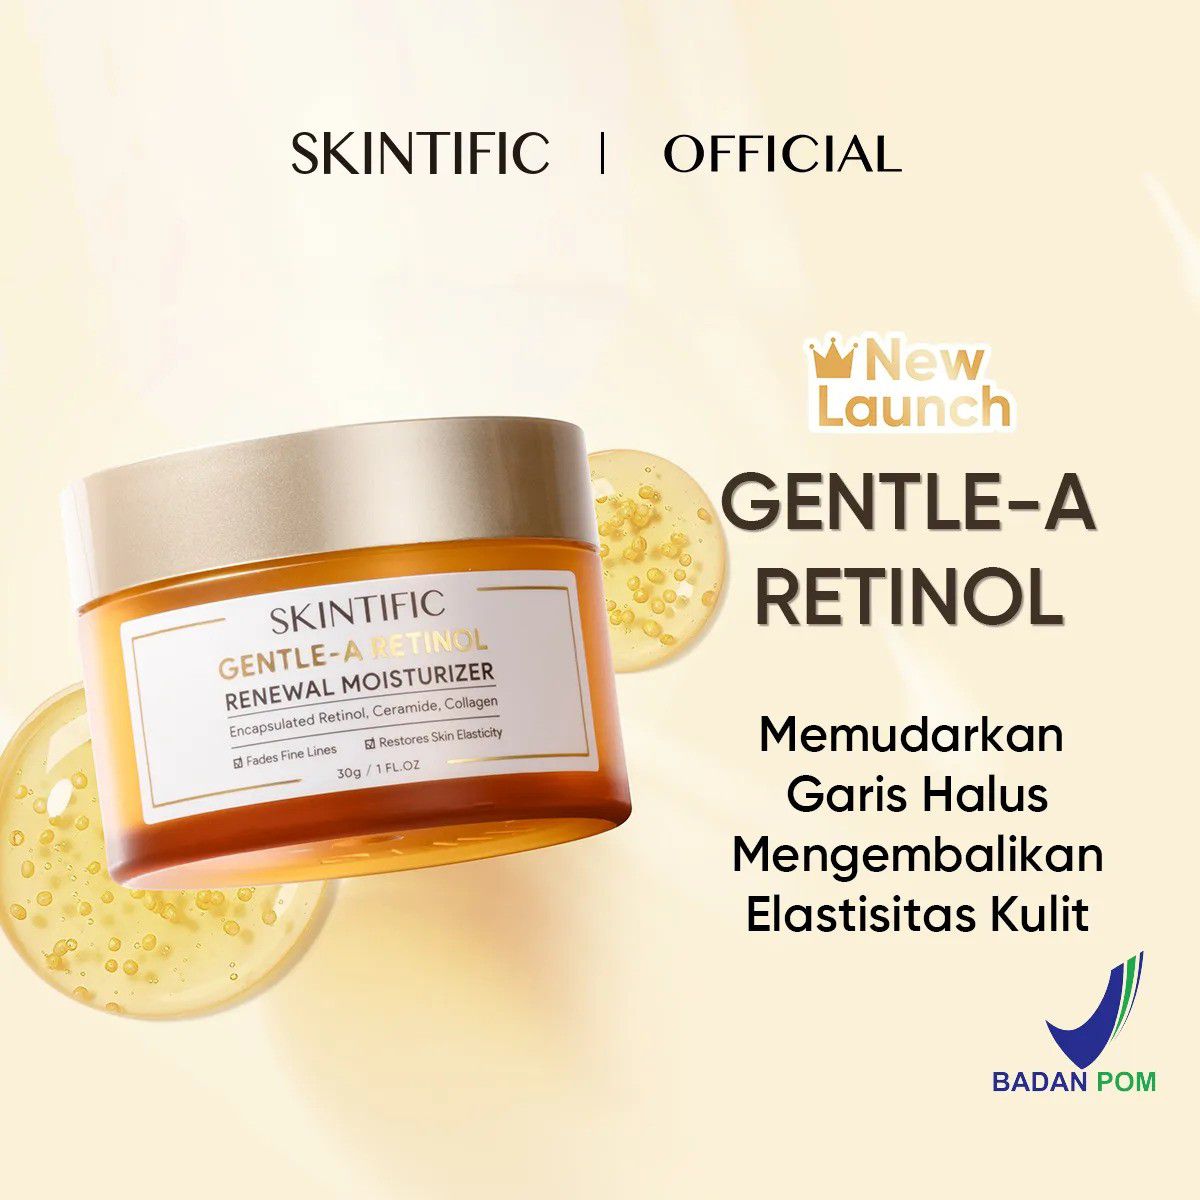 Produk Skintific Untuk Usia 40 Tahun Ke Atas - Skintific Gentle-A Retinol Renewal Moisturizer